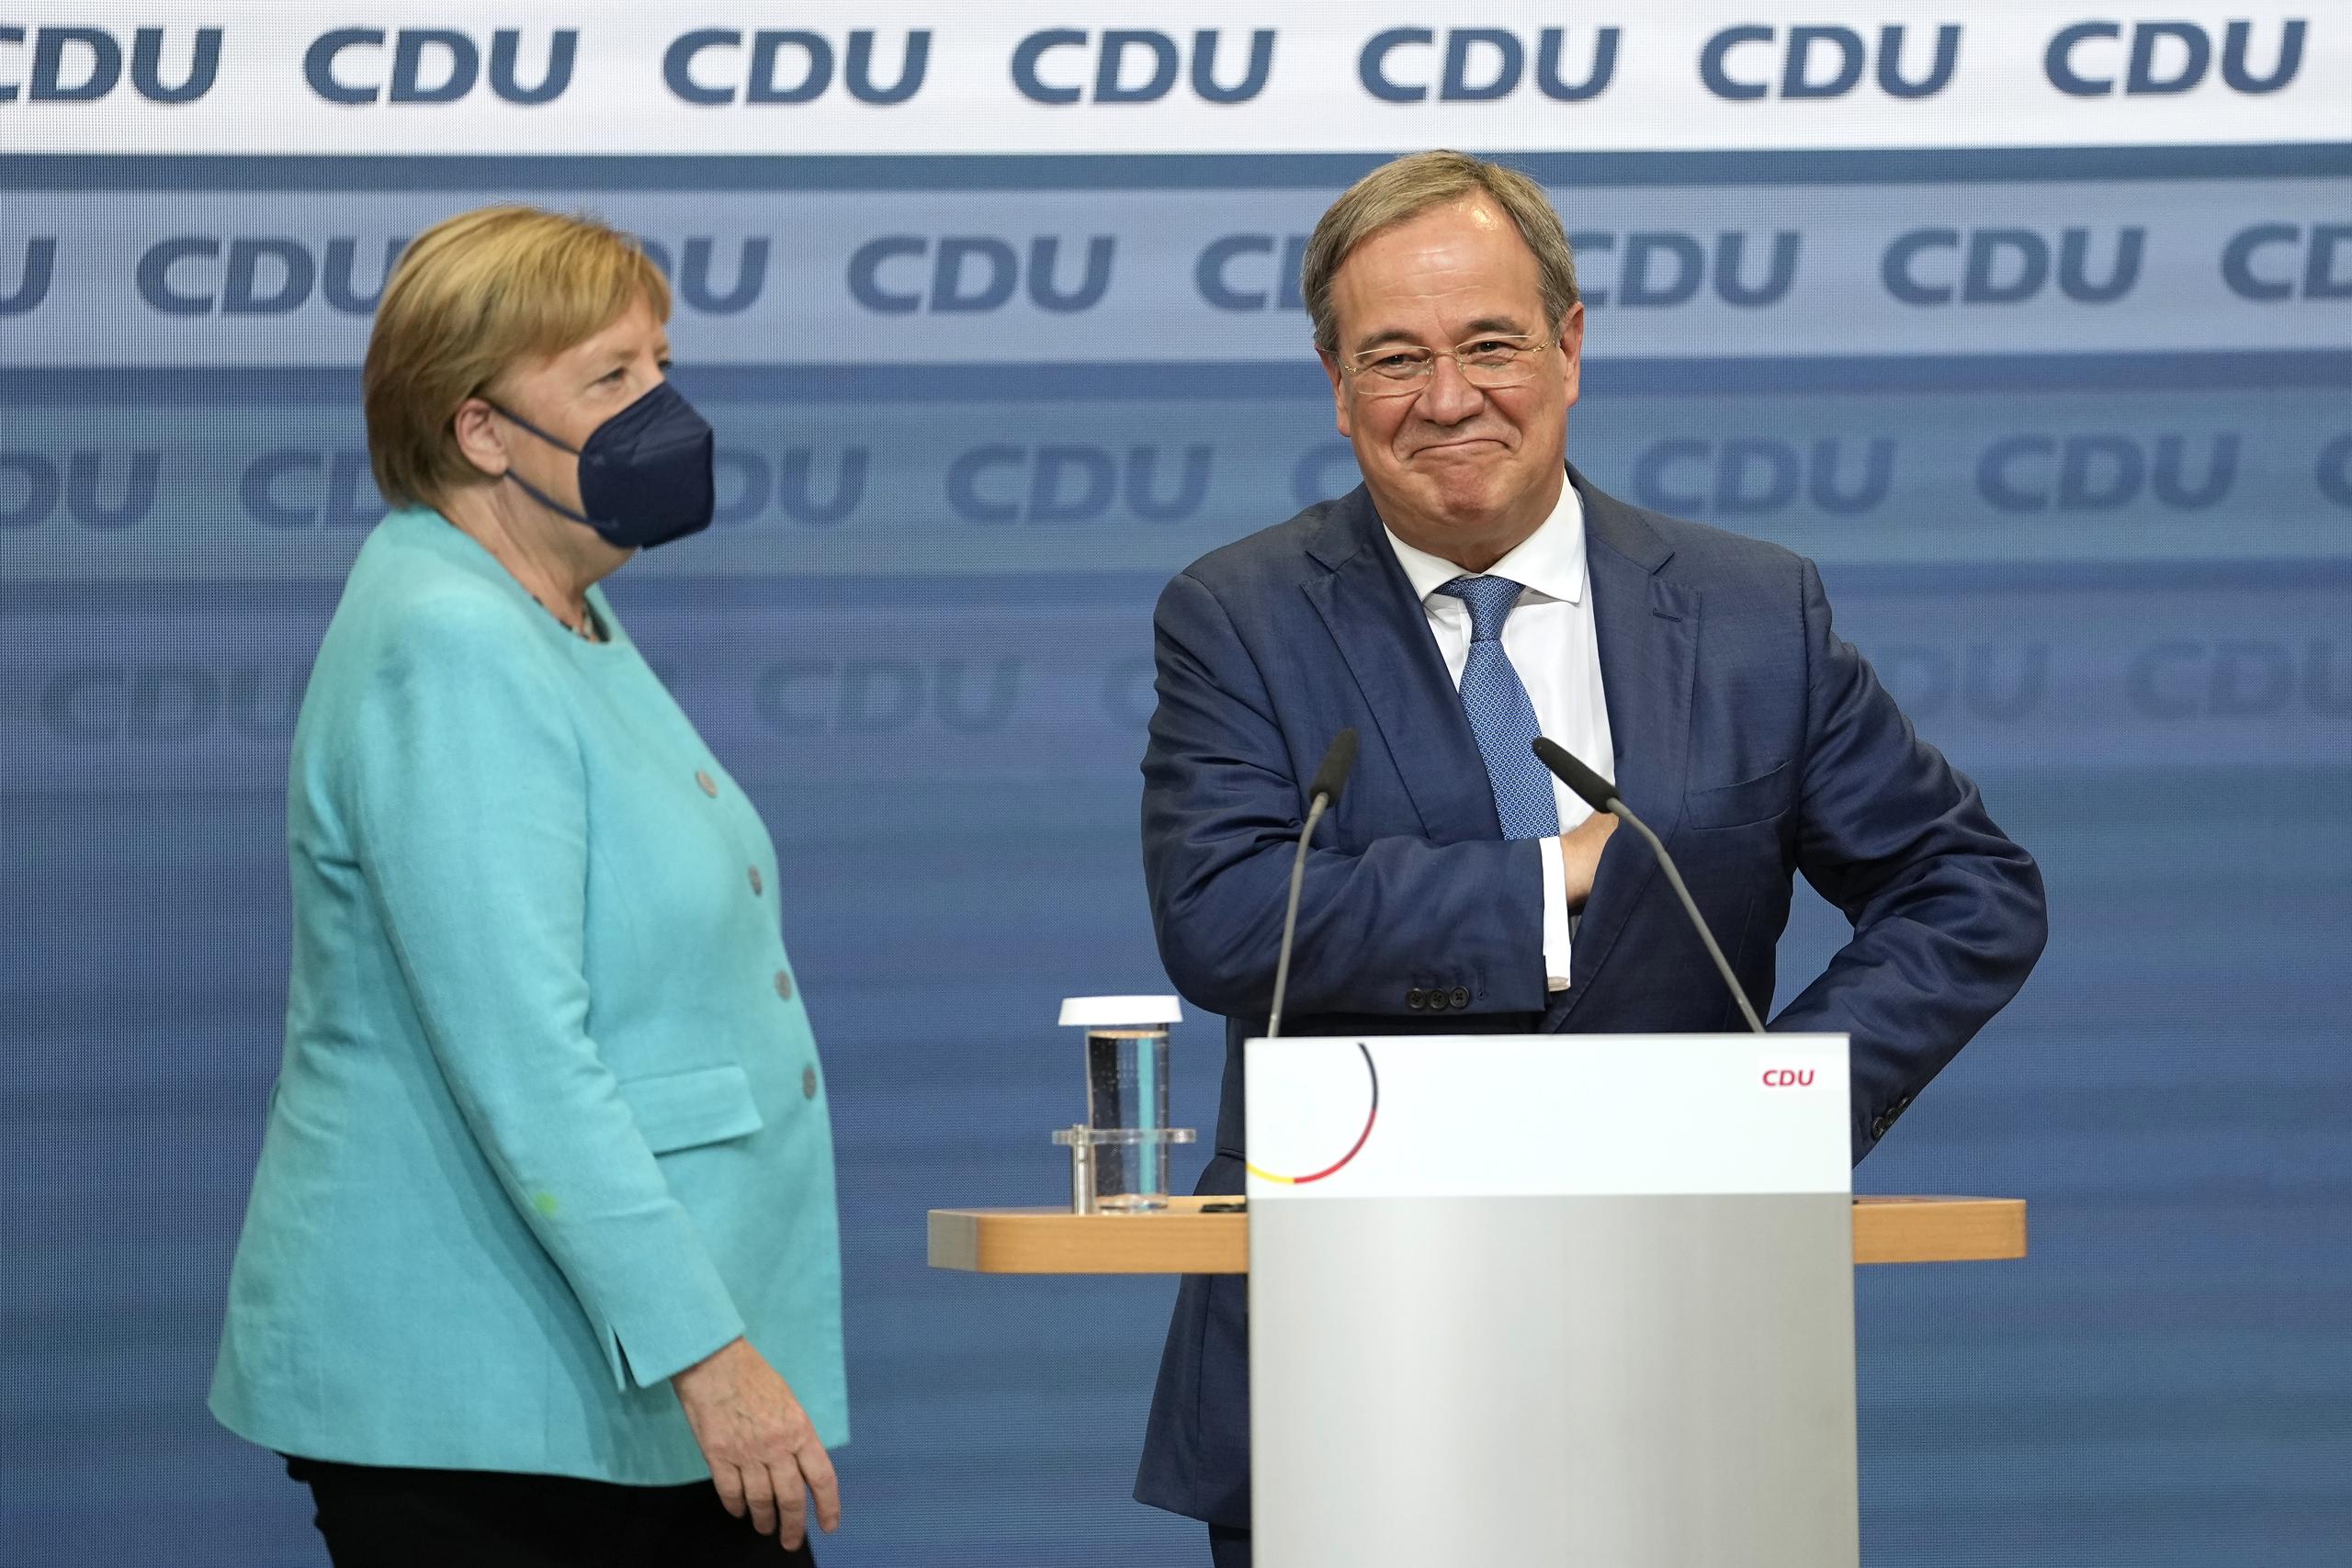 La canciller Angela Merkel permanece de pie junto al gobernador Armin Laschet, el principal candidato de la Unión Demócrata Cristiana.